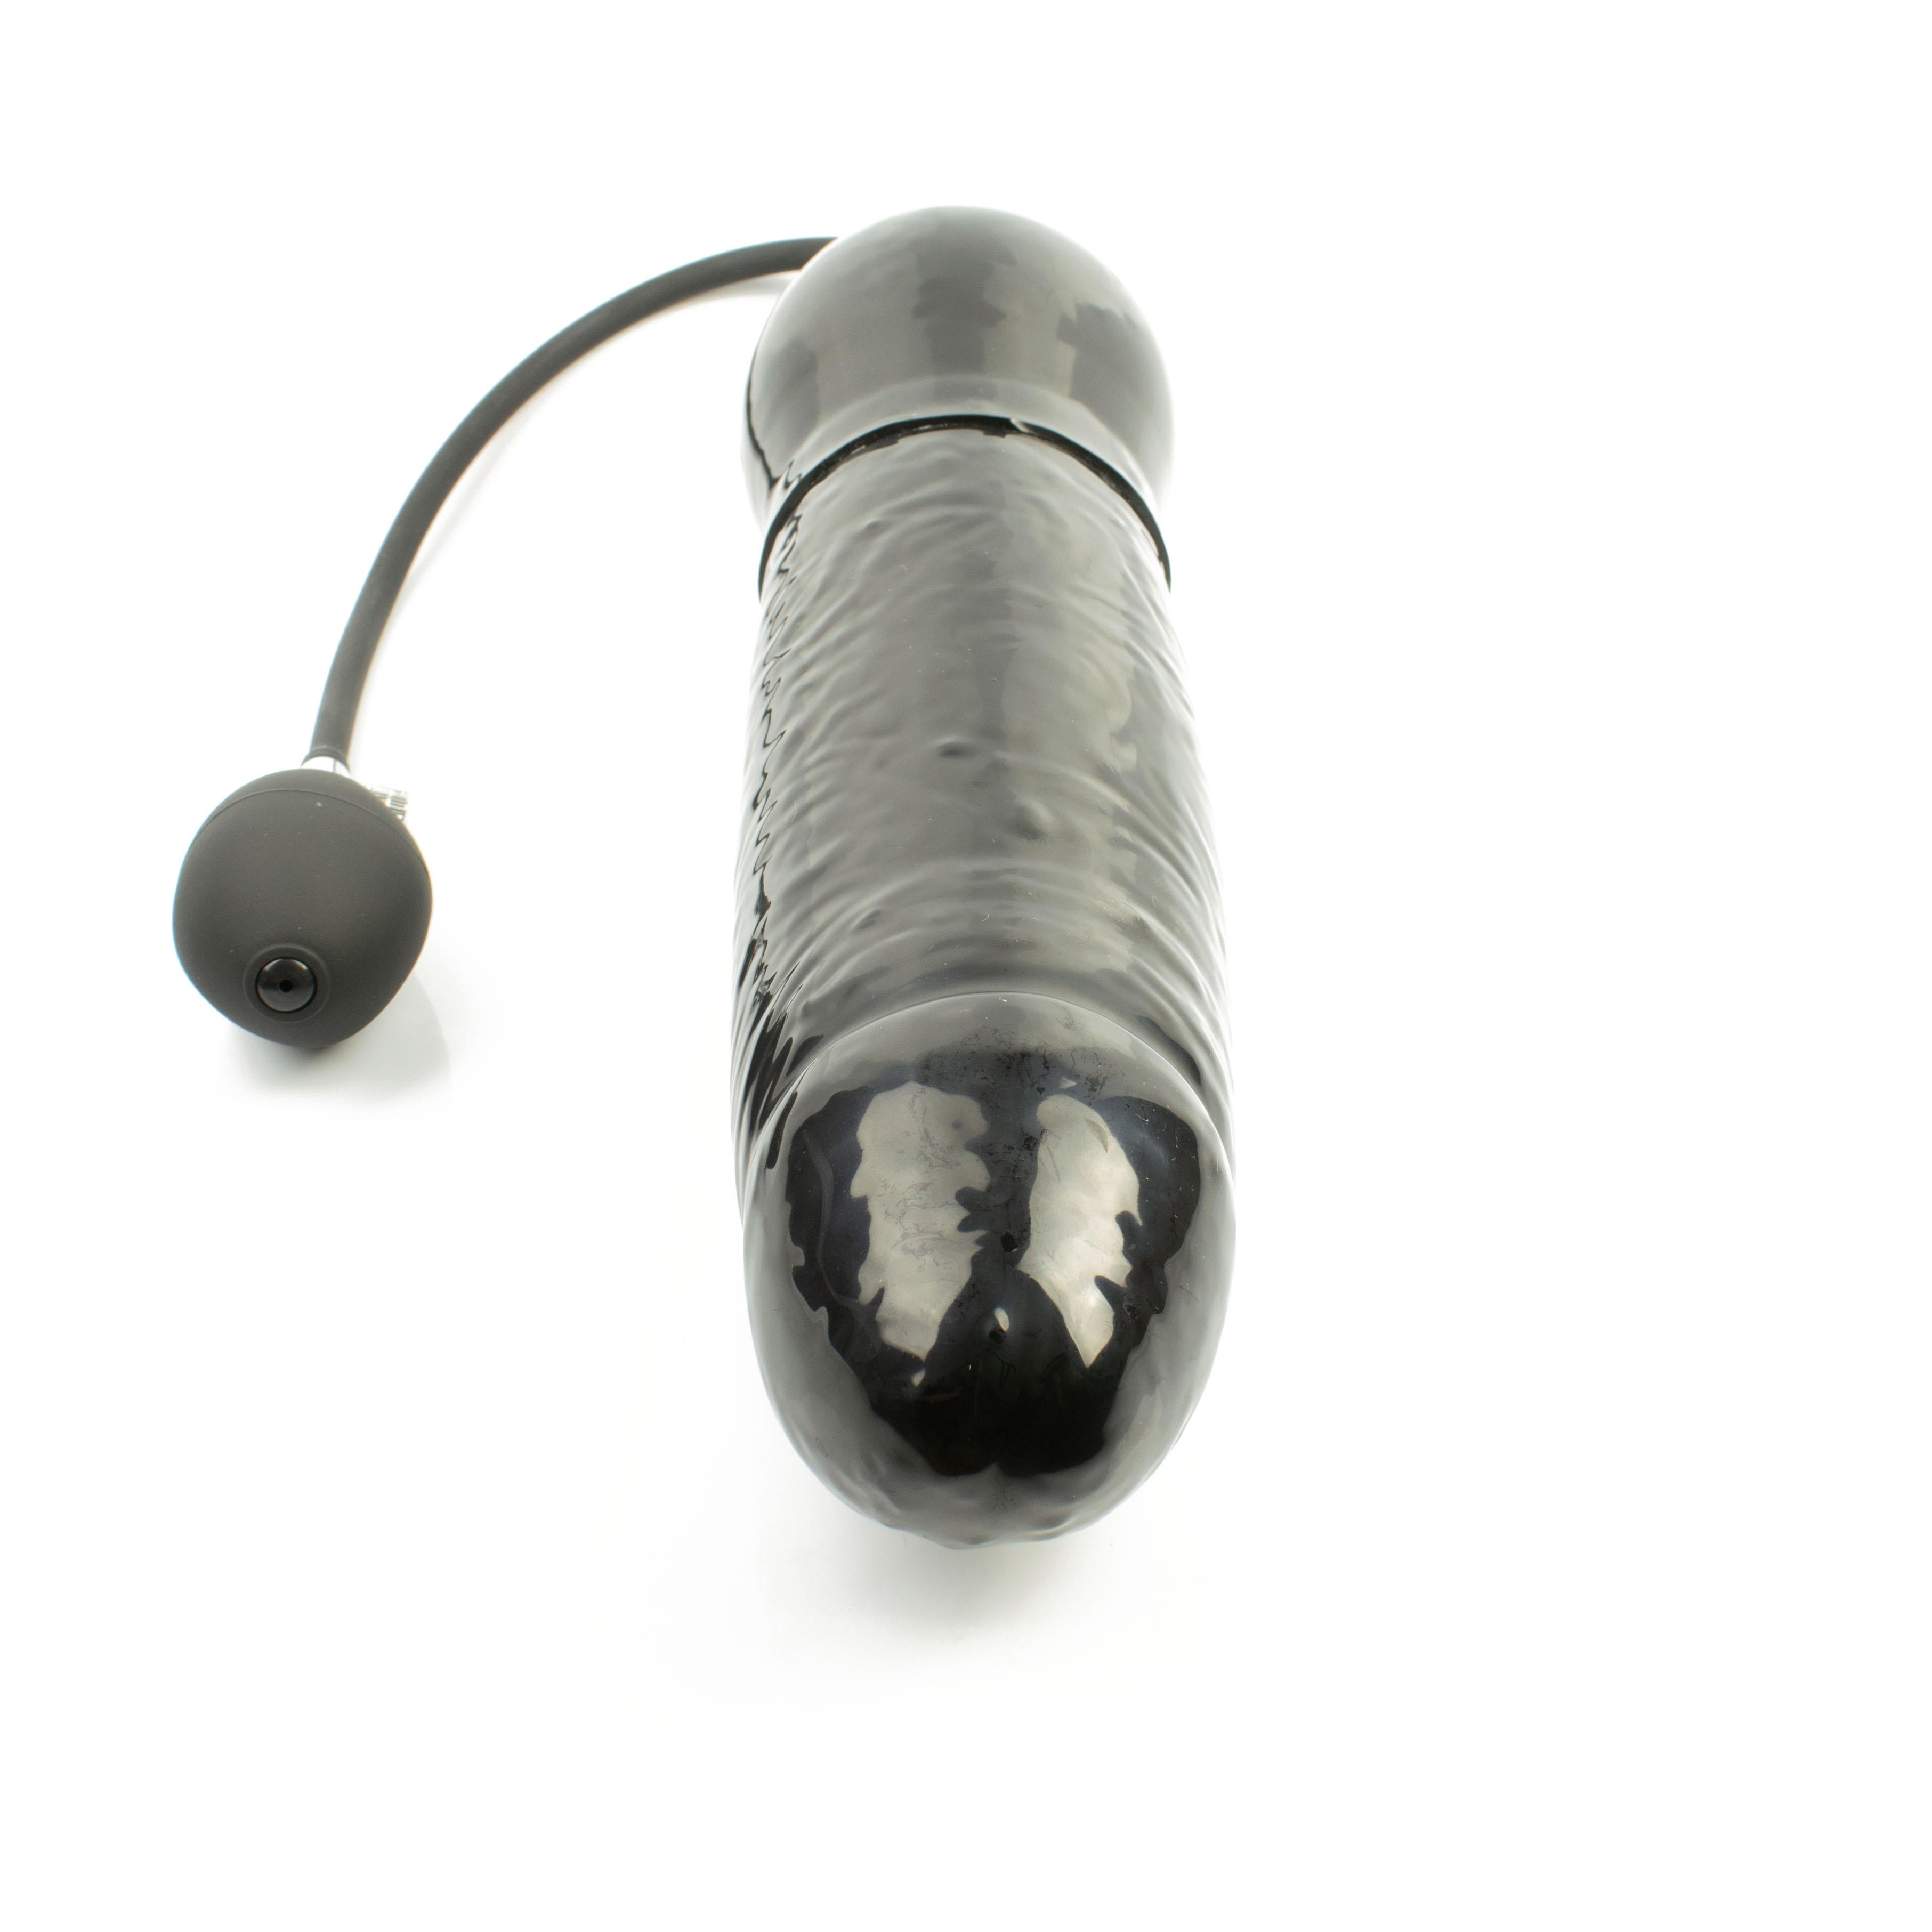 Rubberfashion Latex Anal Dildo - Plug aufblasbar extrem groß - realistischer Dildo XXXXL mit Pumpe für Frauen und Männer 34,5 x 7,3cm